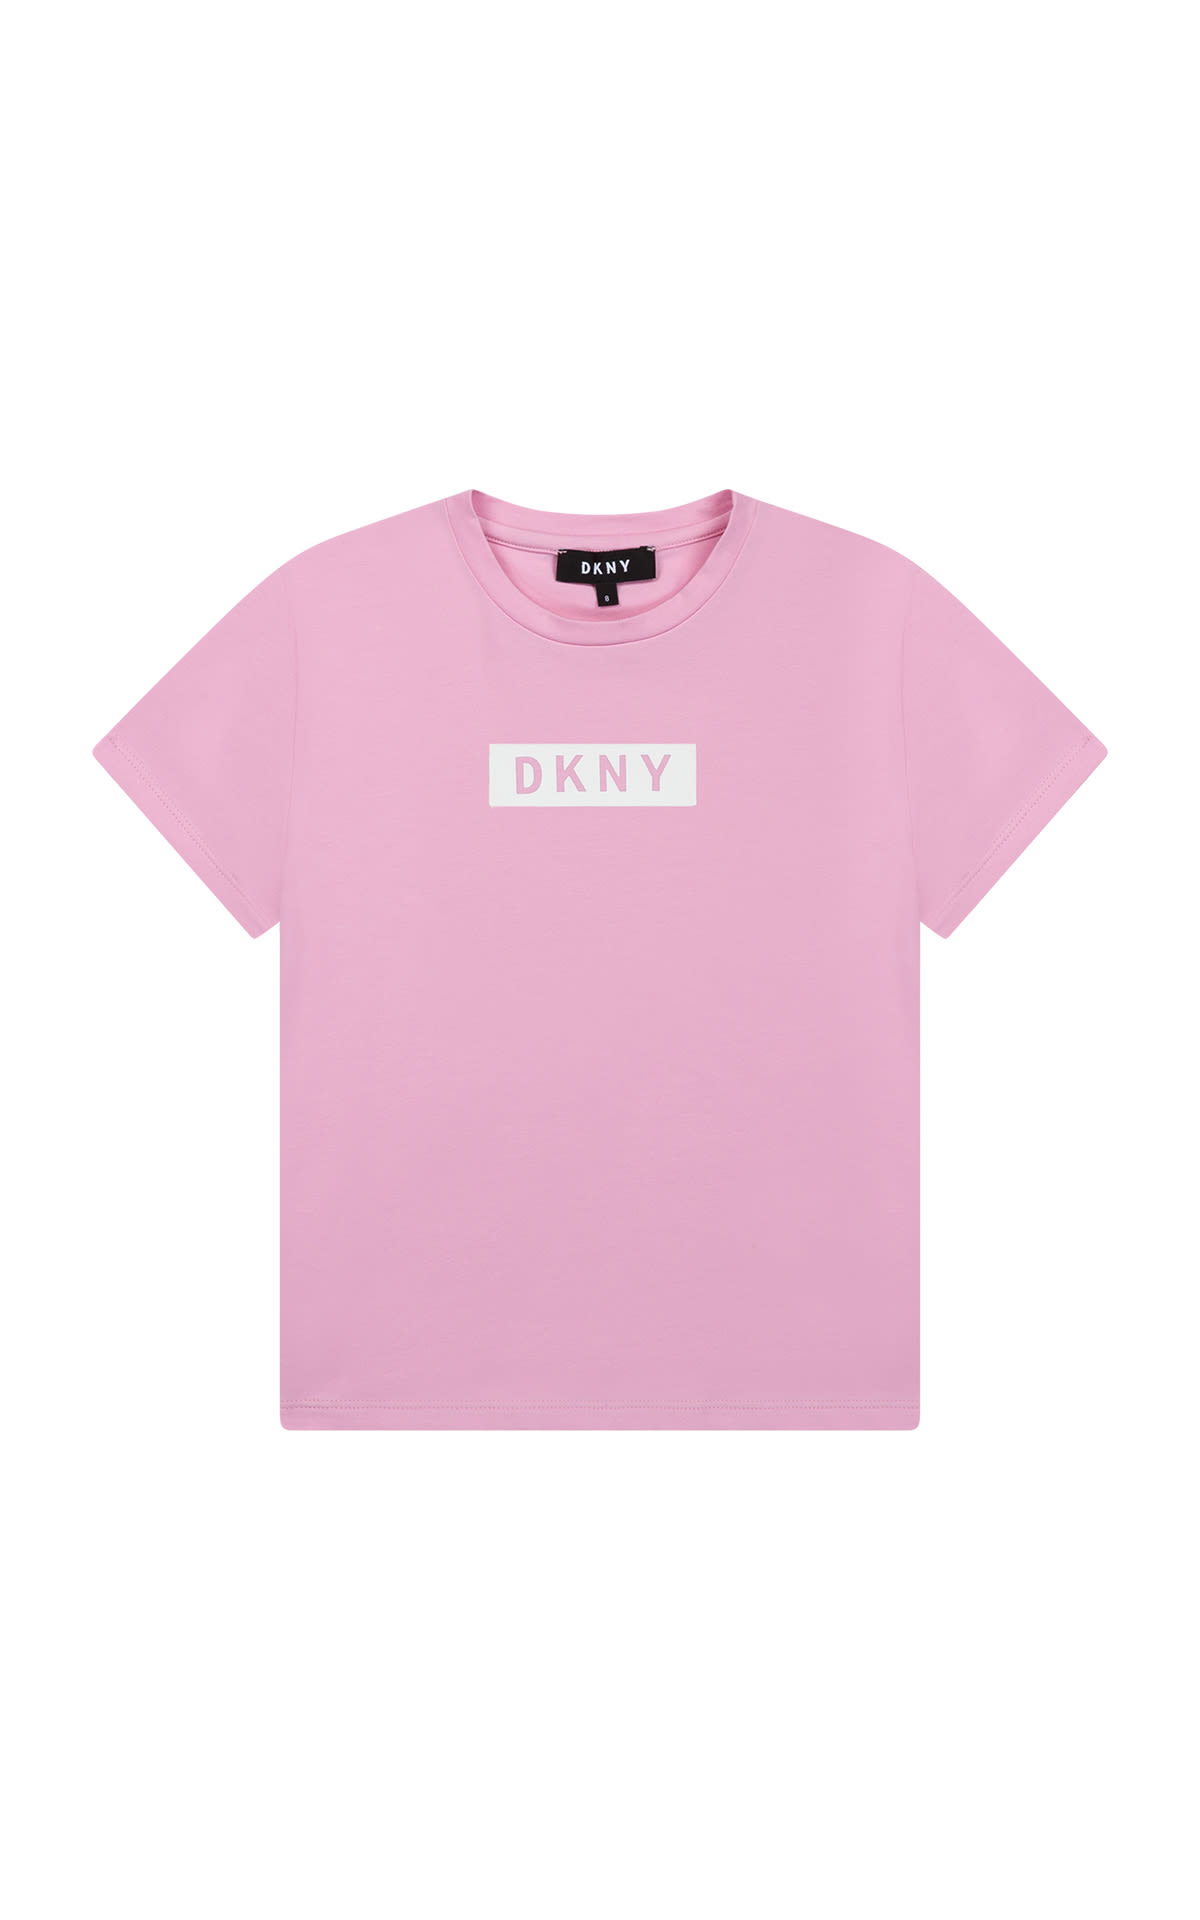 DKNY - Camiseta rosa